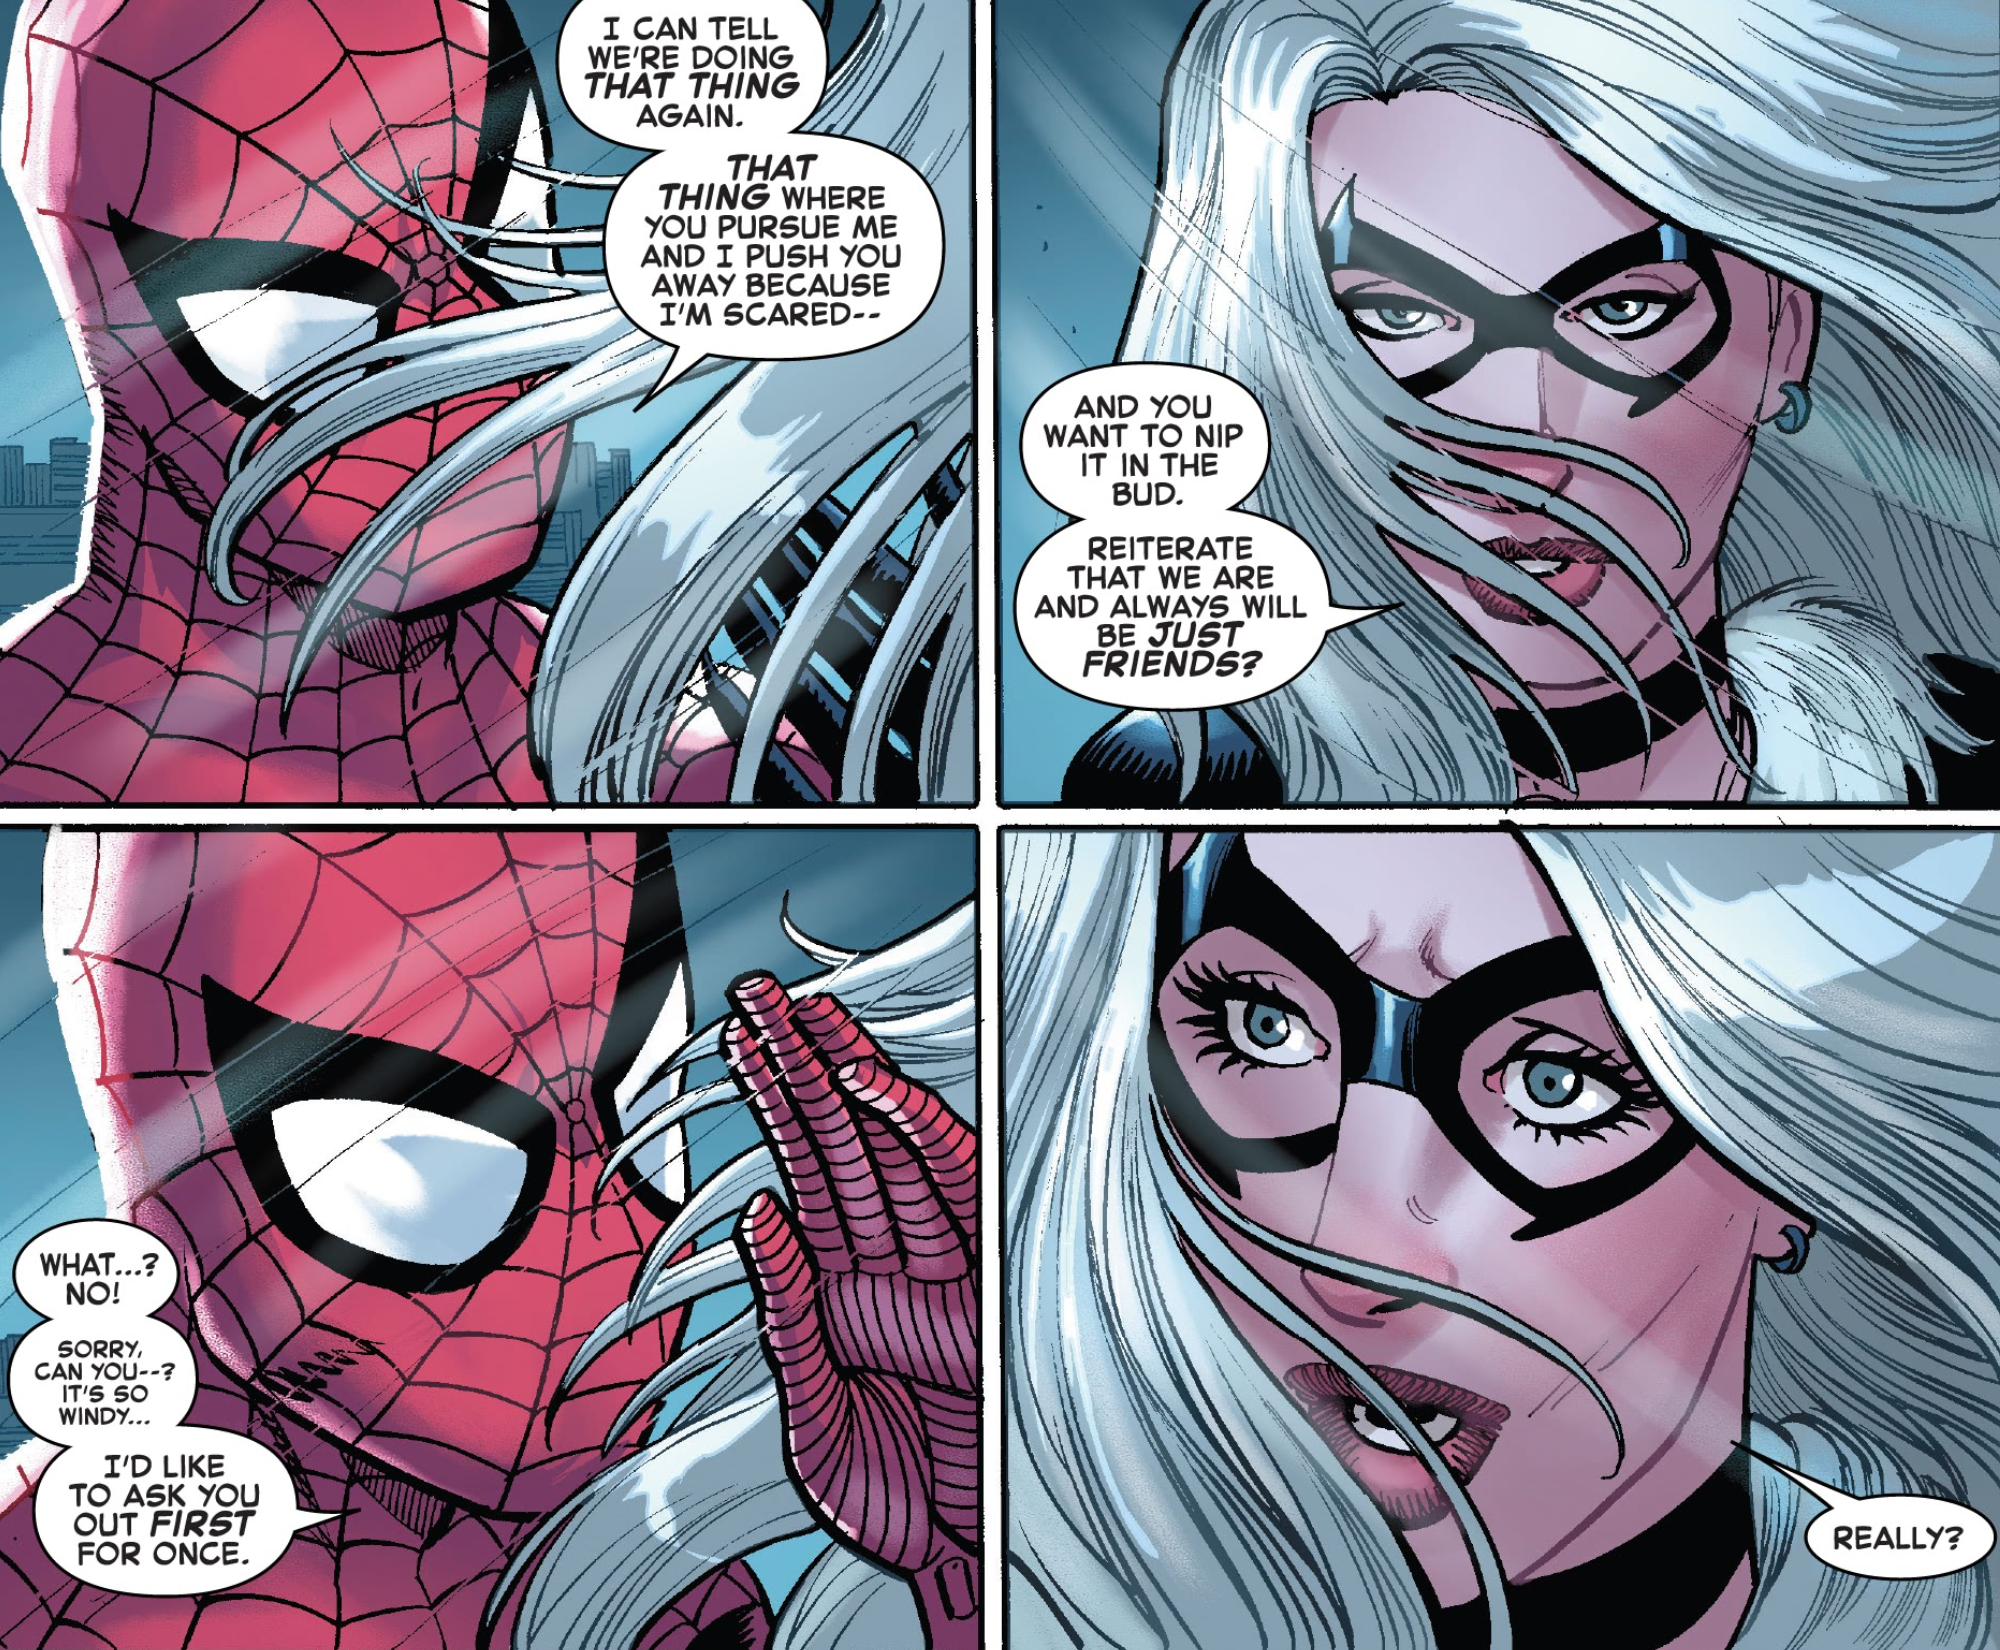 Spider-Man asks out Black Cat